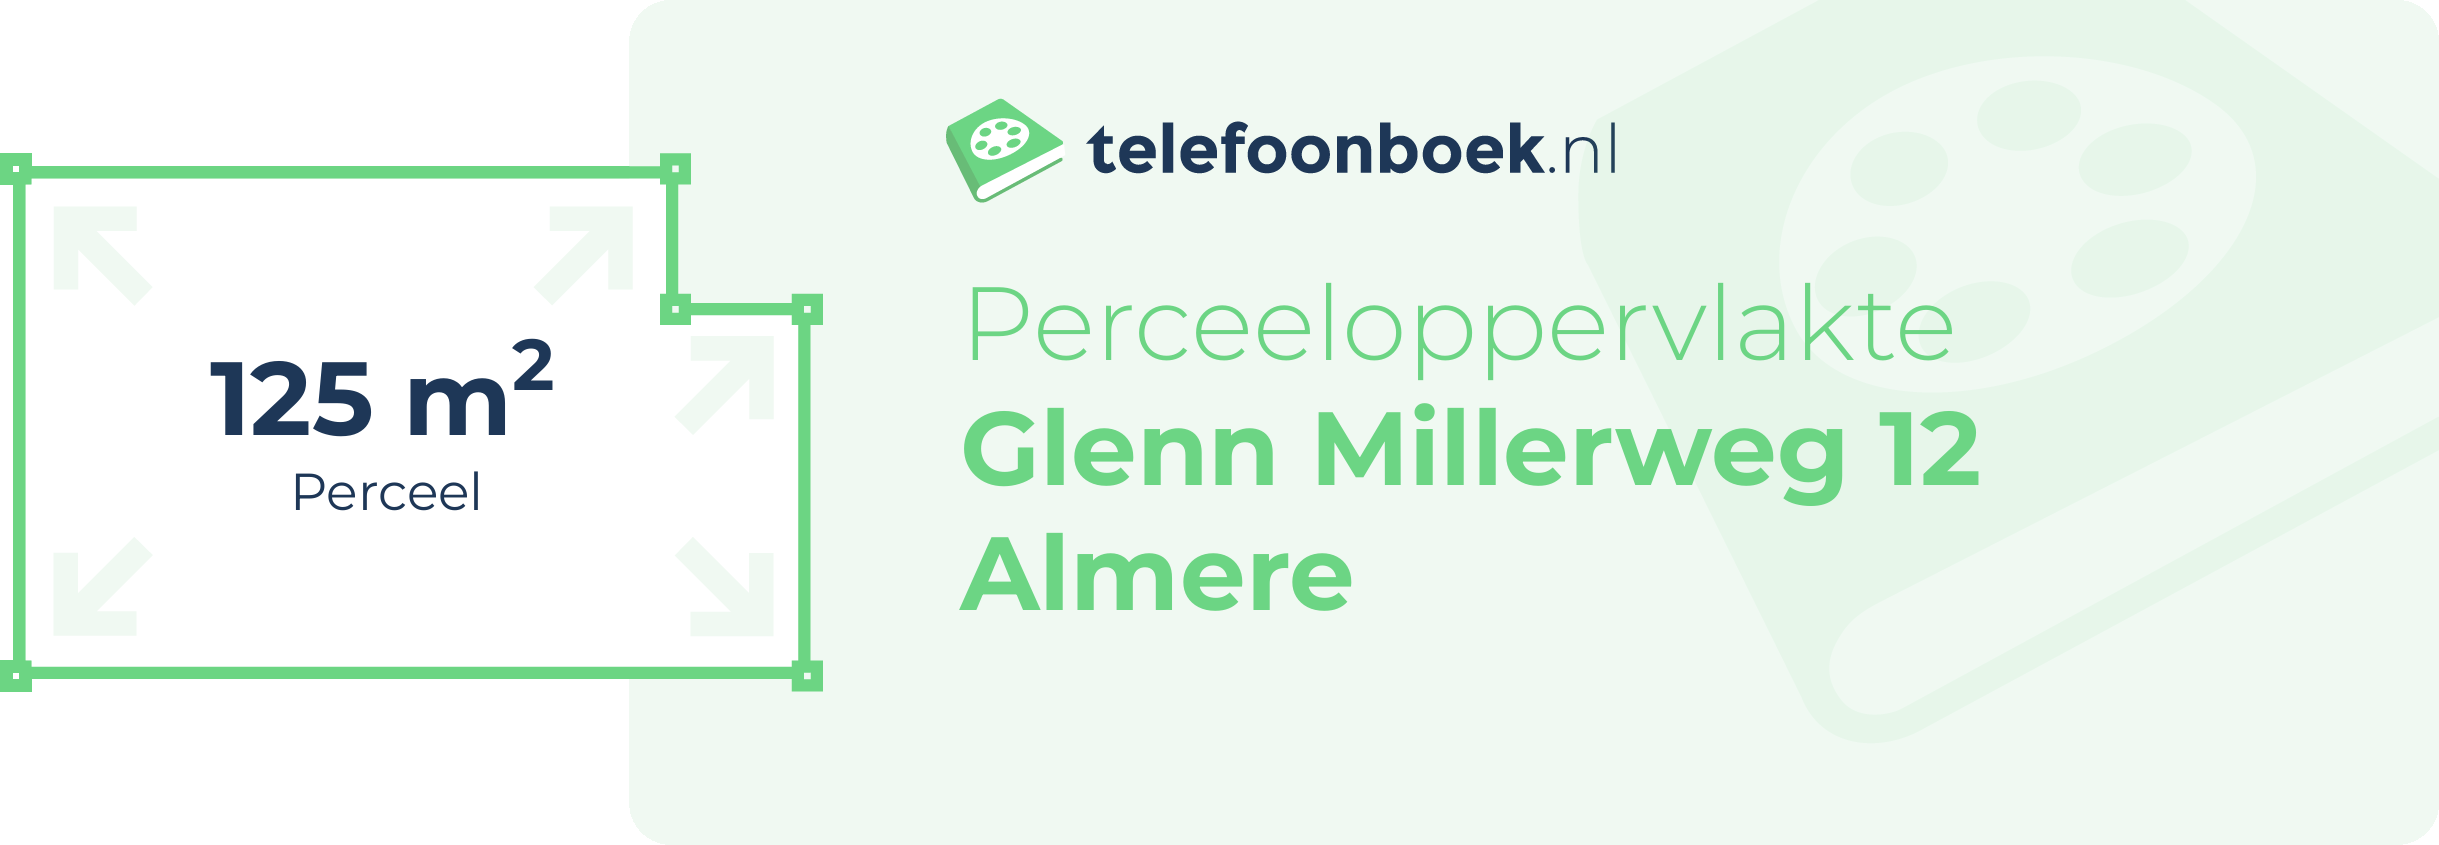 Perceeloppervlakte Glenn Millerweg 12 Almere